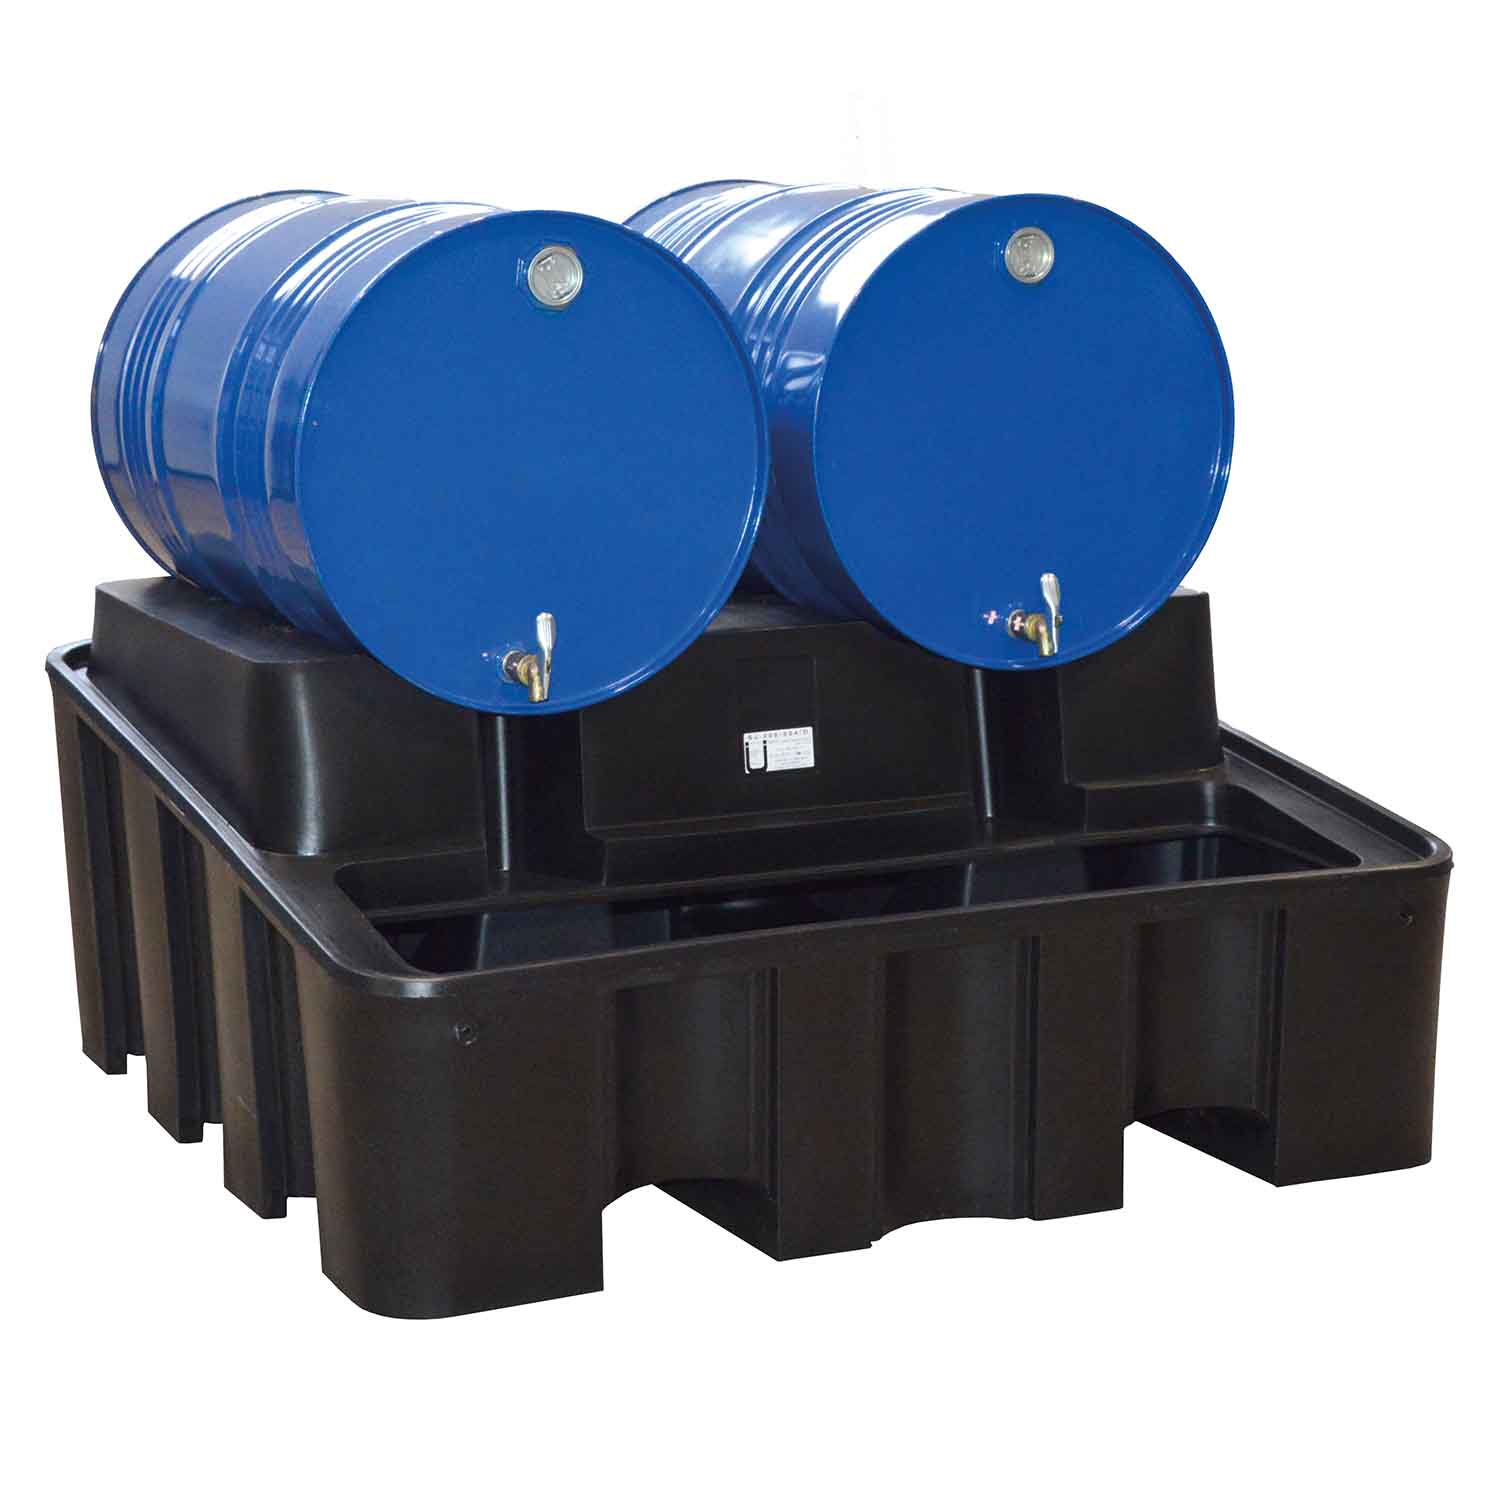 Auffangwanne aus Kunststoff für 2 Fässer mit integriertem Abfüllbock, Auffangvolumen 450 l